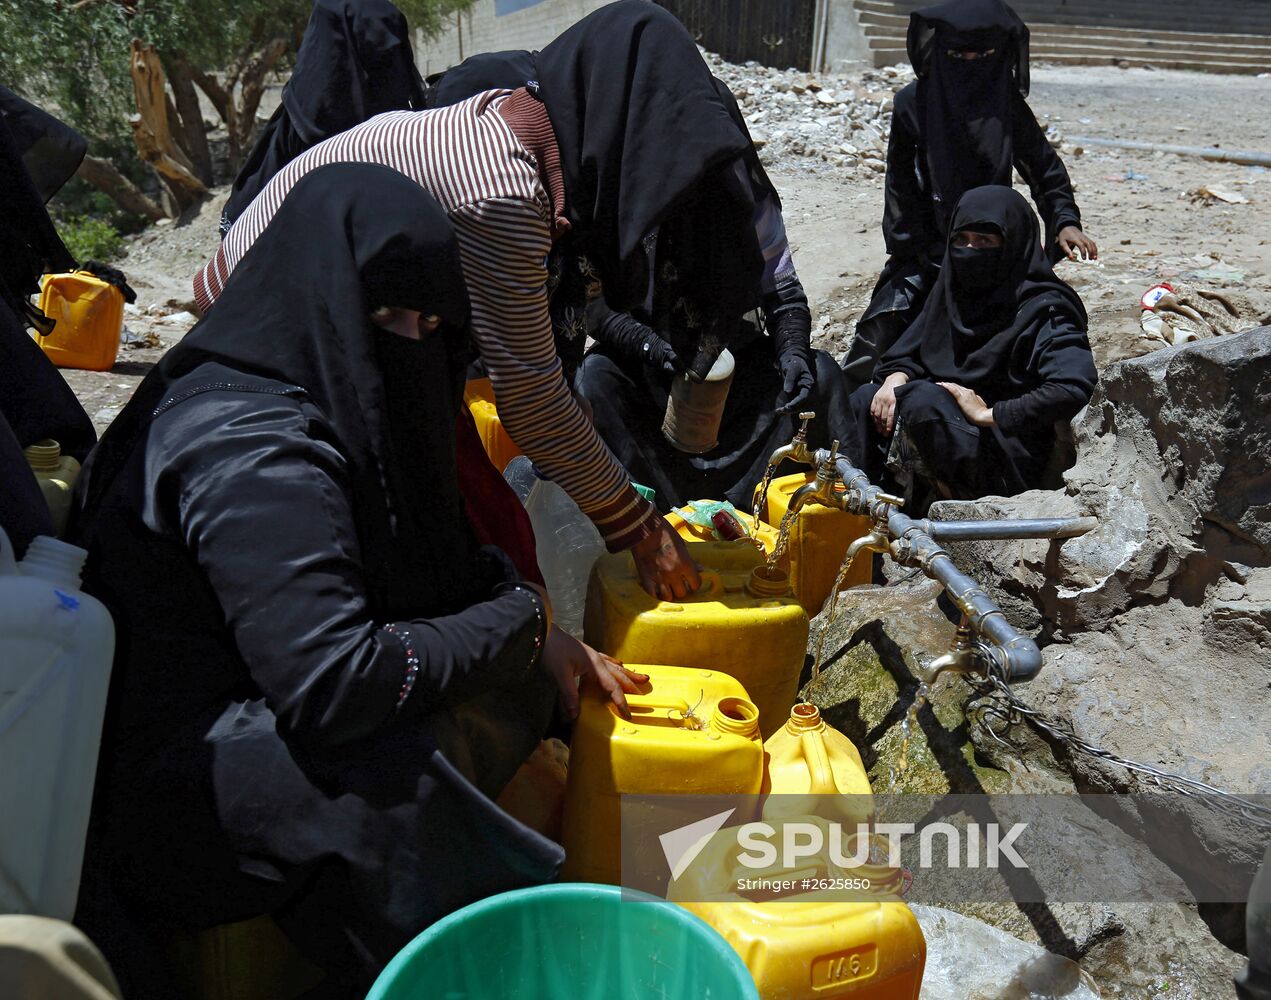 Shortage of drinking water in Sana'a, Yemen